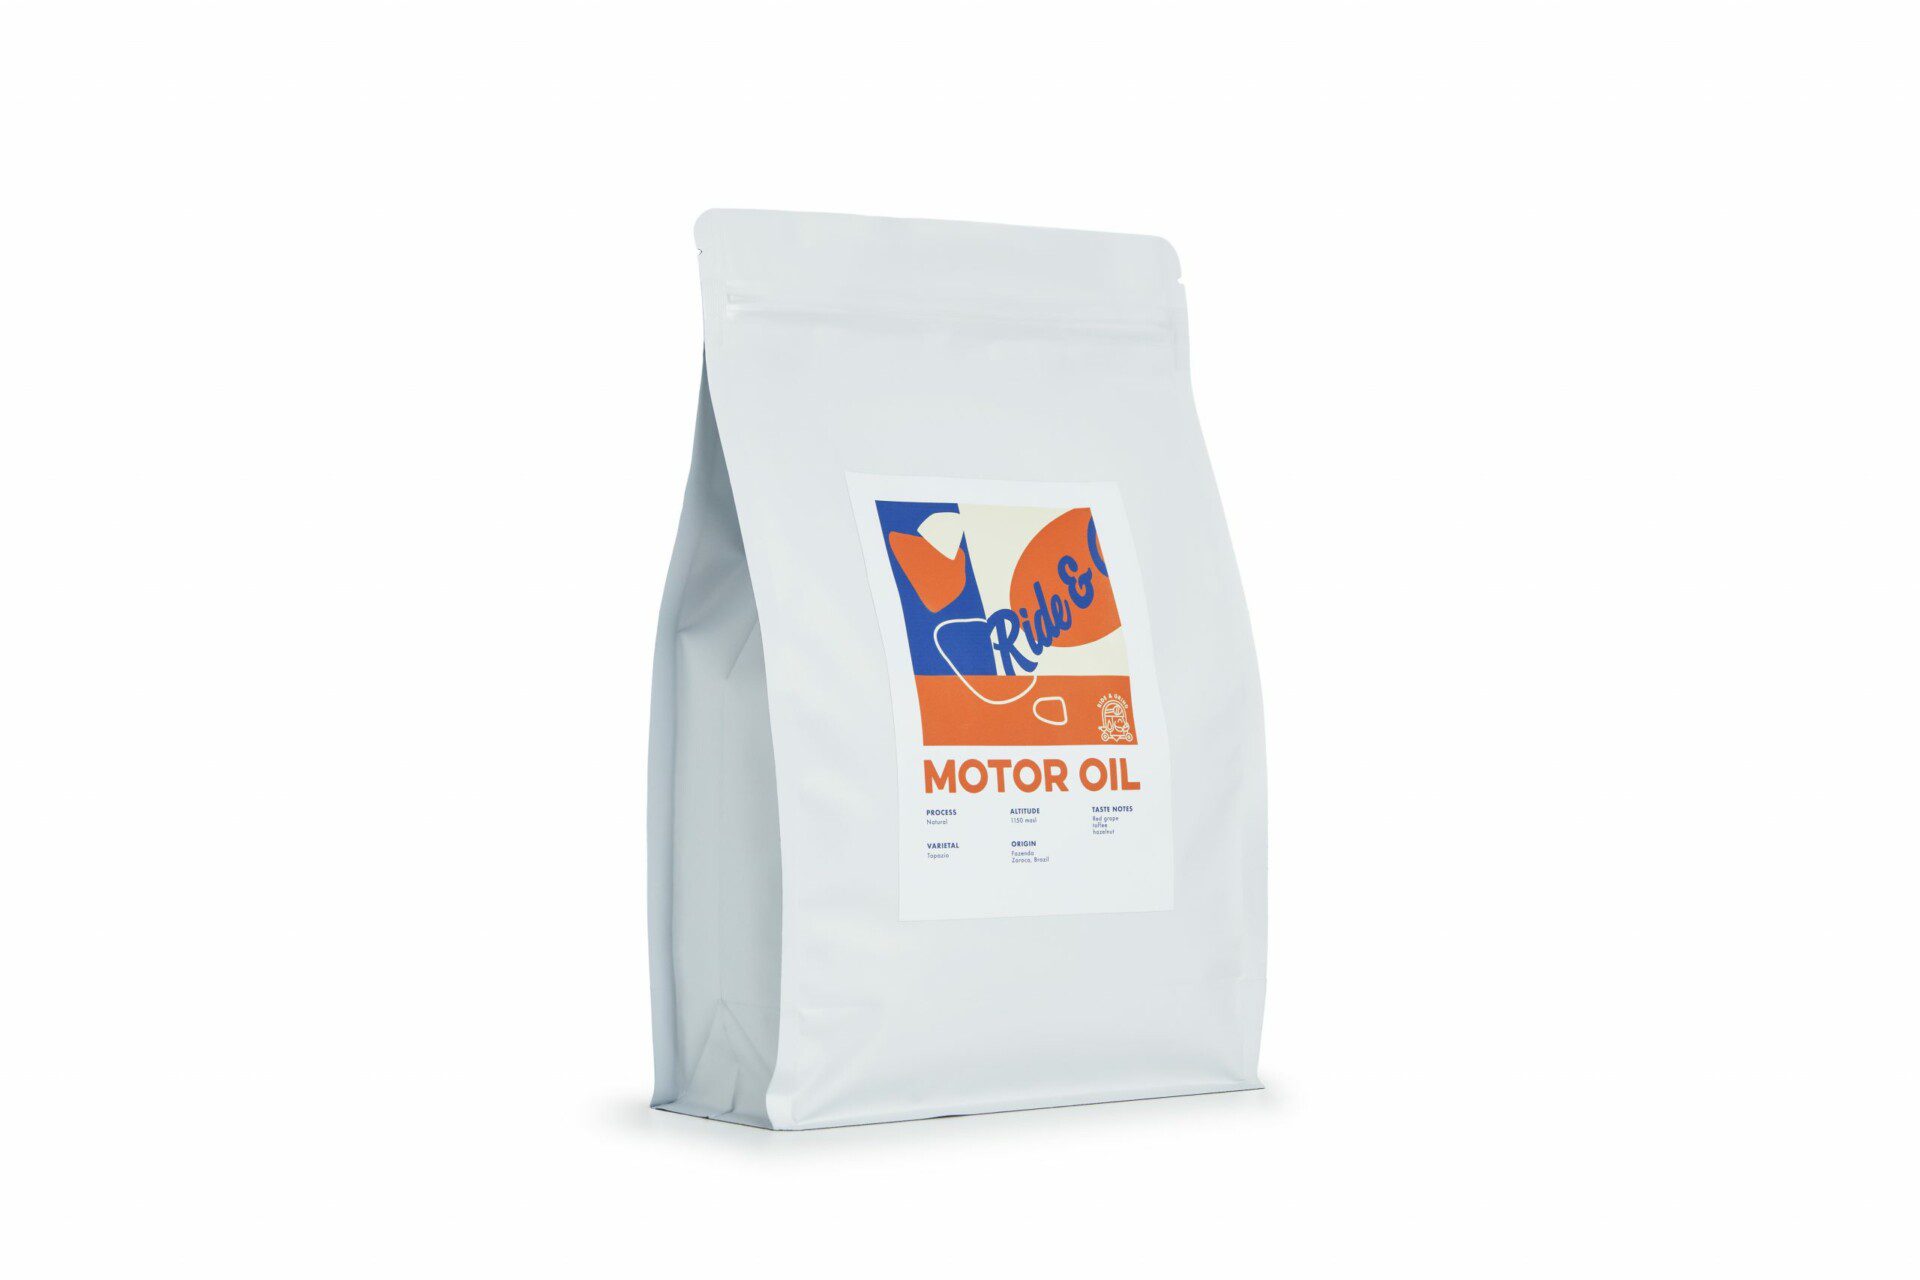 Motor Oil - Re-fill bag